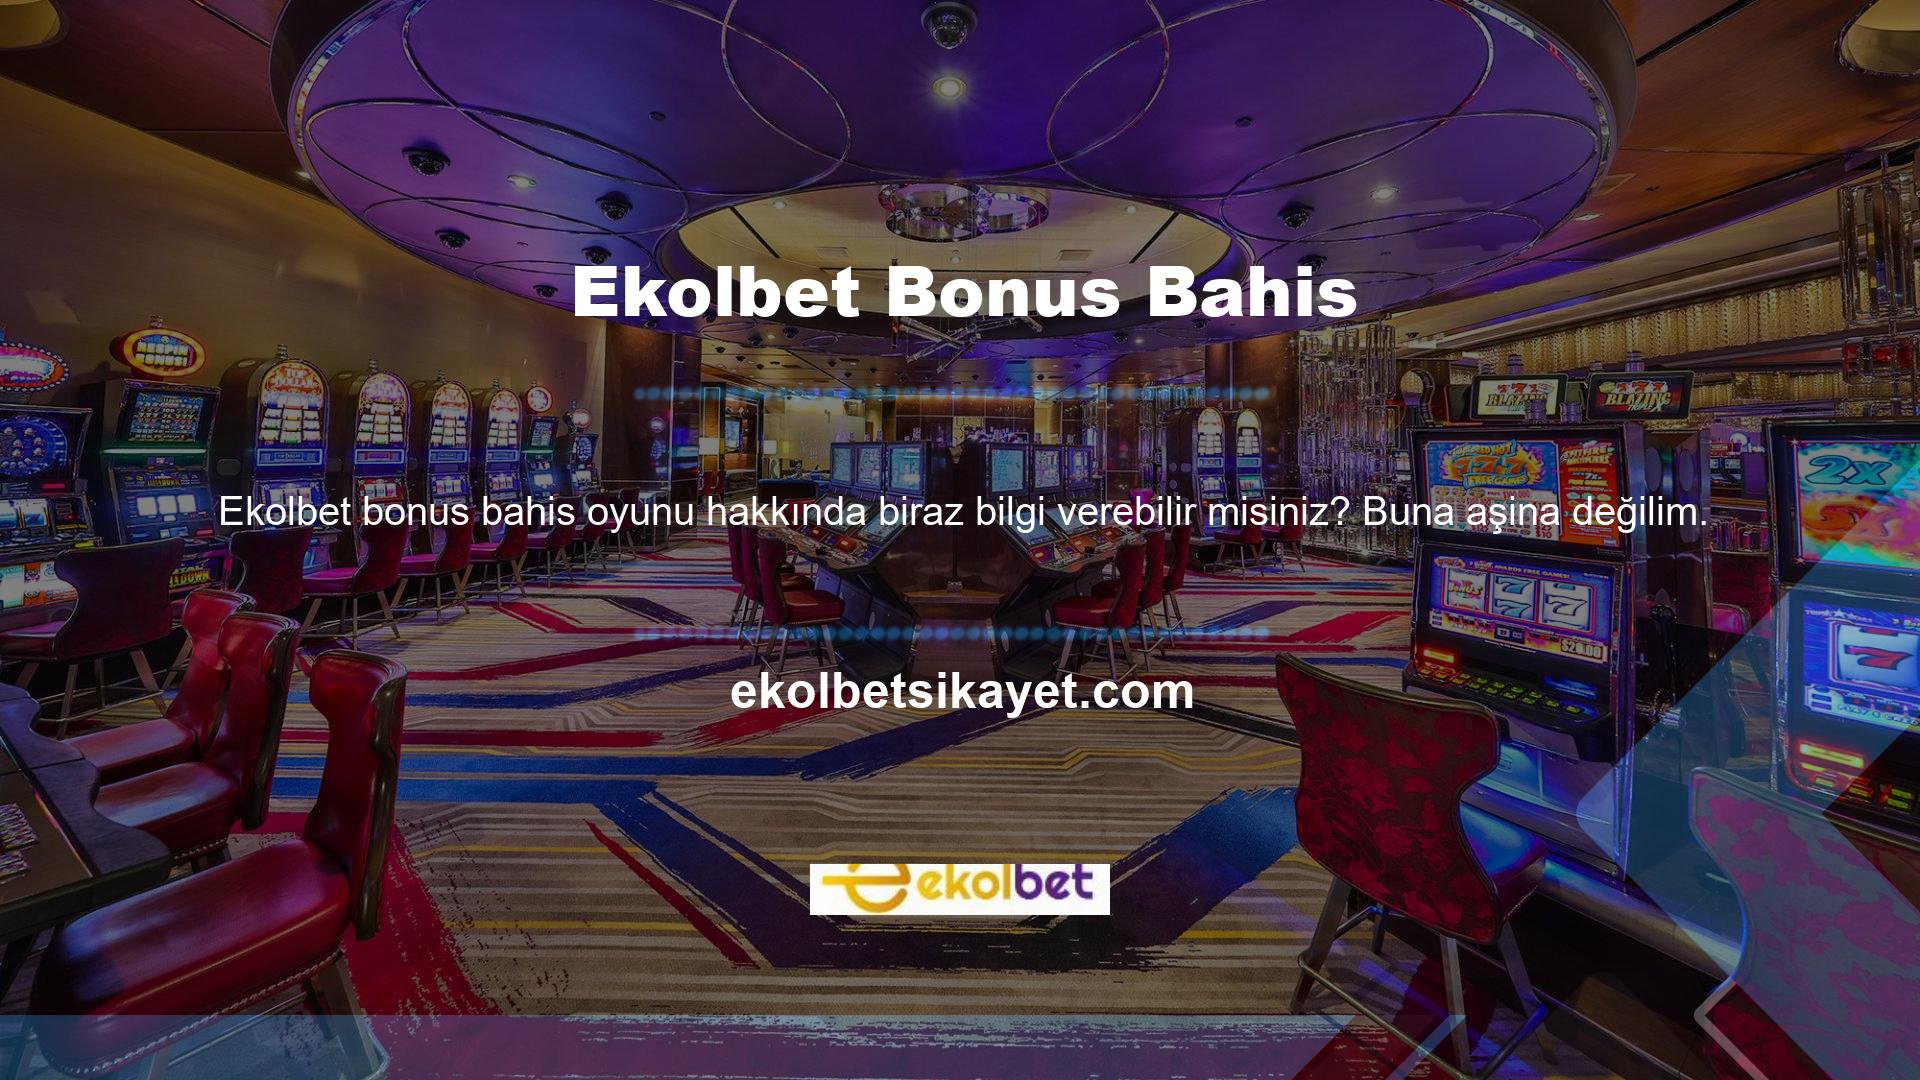 Slot oynamakla ilgilenen herkes, Türkiye'nin en popüler casino sitelerinden biri olan Ekolbet iş fırsatı bulacaktır